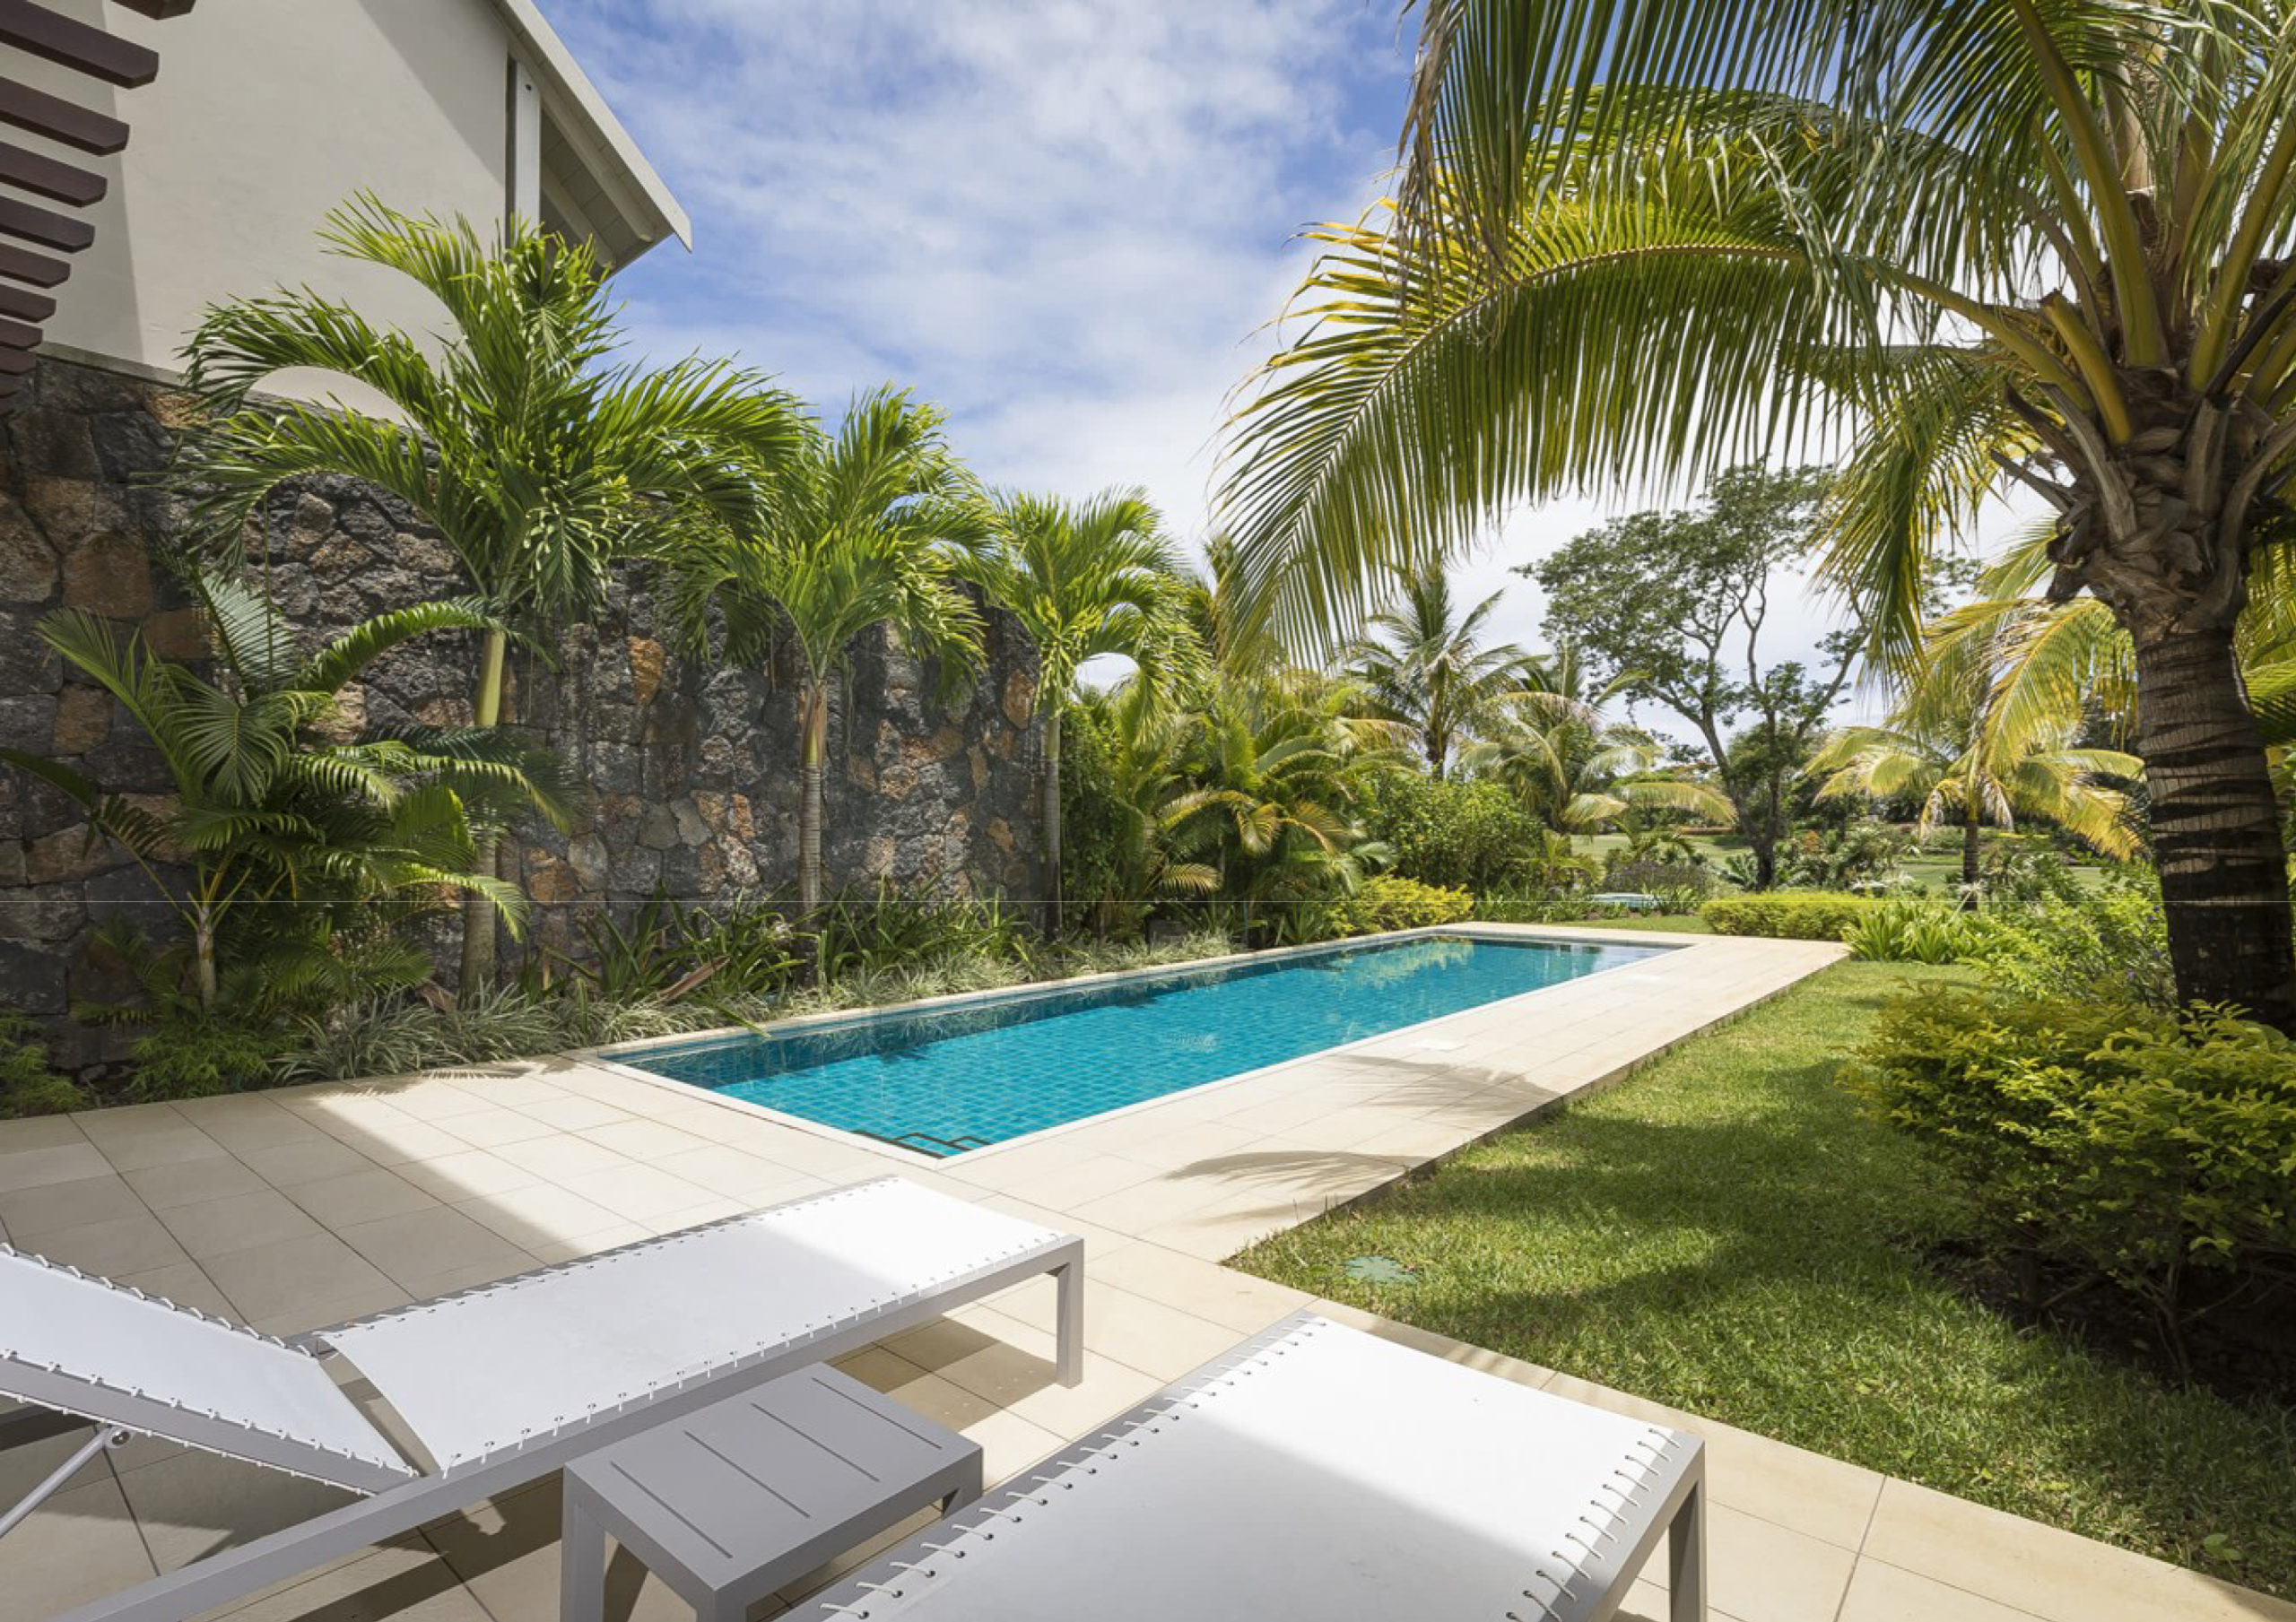 Villa jumelée IRS 3 chambres à vendre - Vue sur le golf et la mer - île Maurice